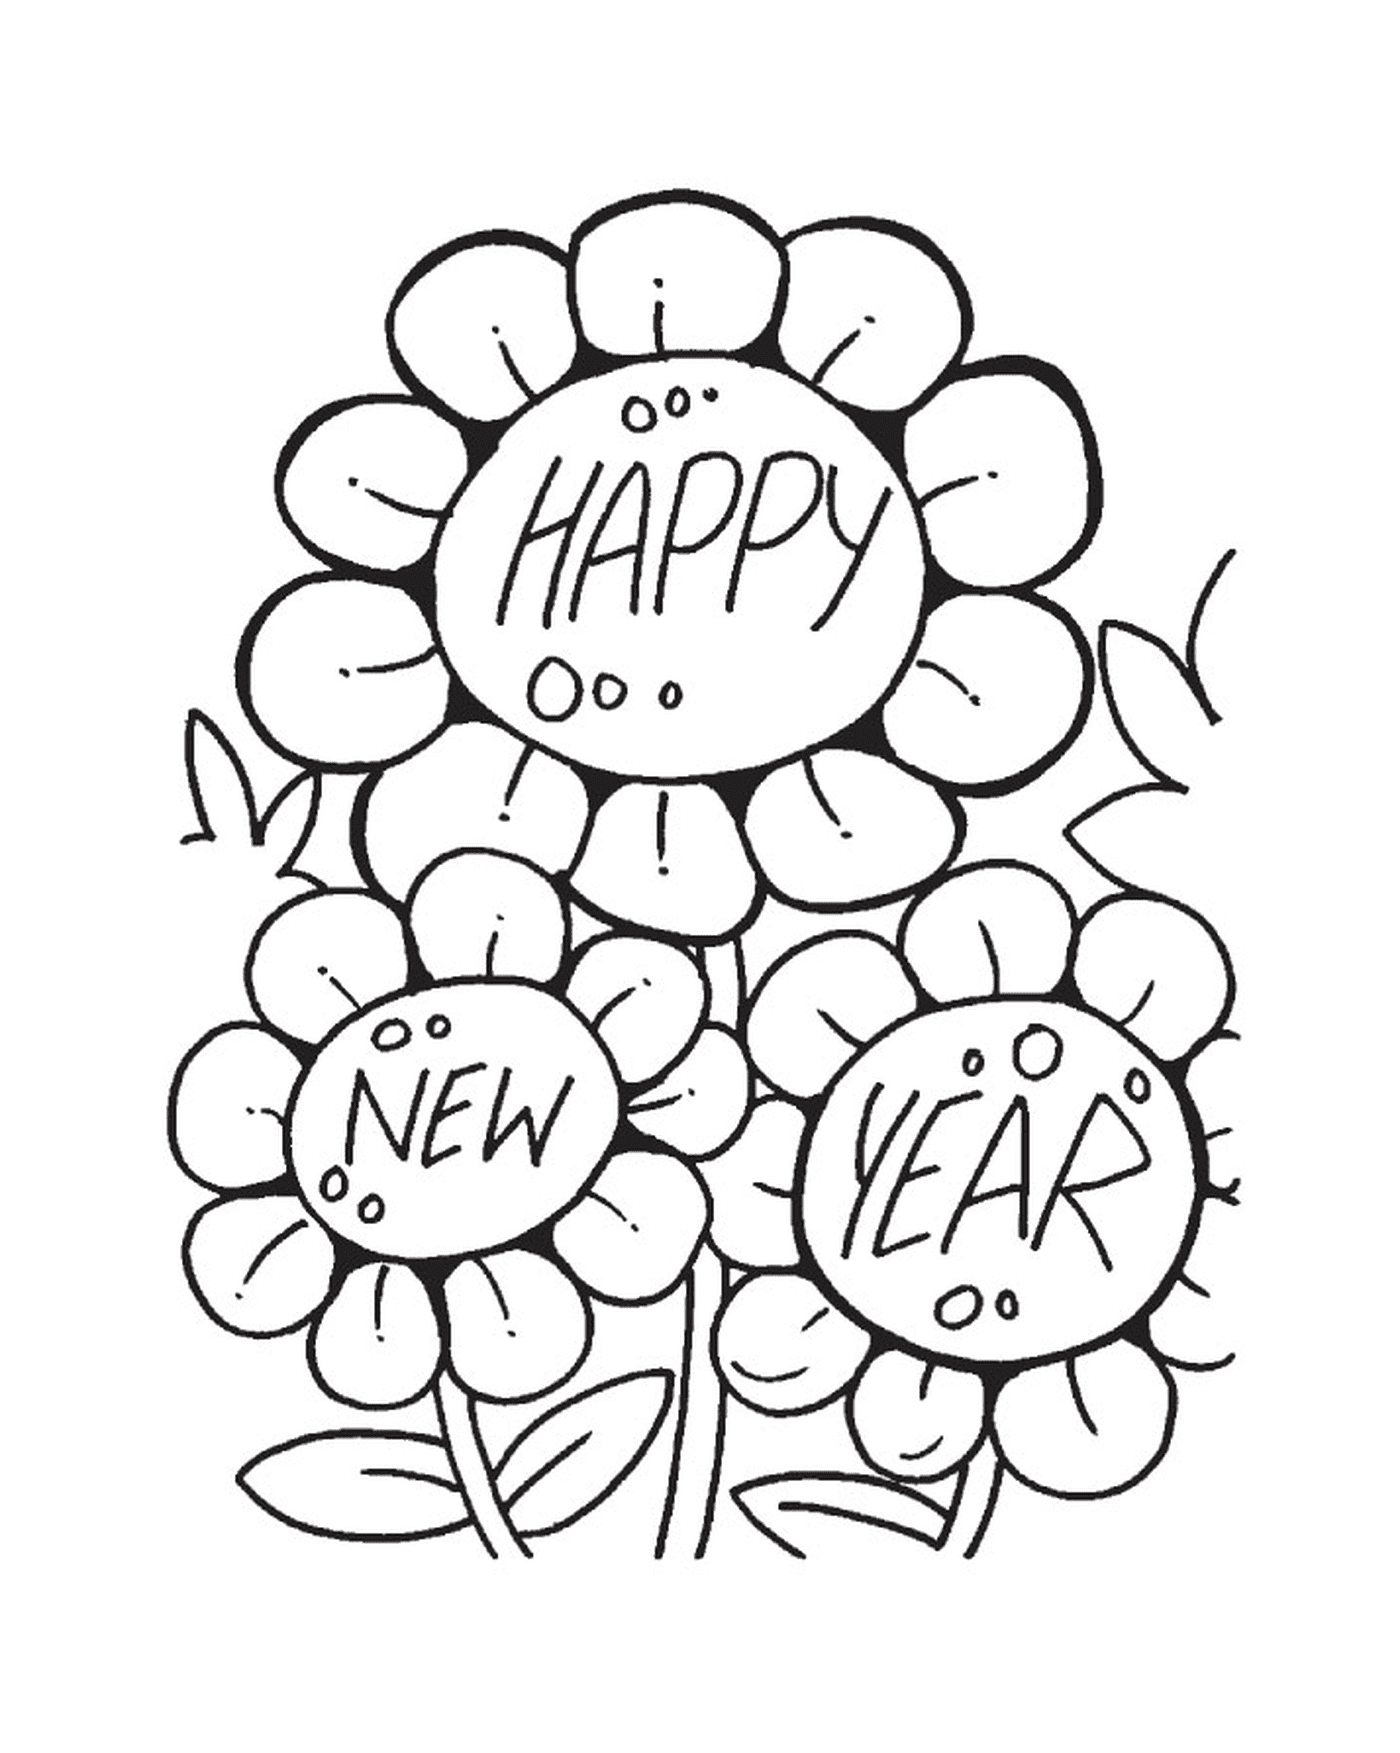  Flores para o Ano Novo, Feliz Ano Novo 2017 